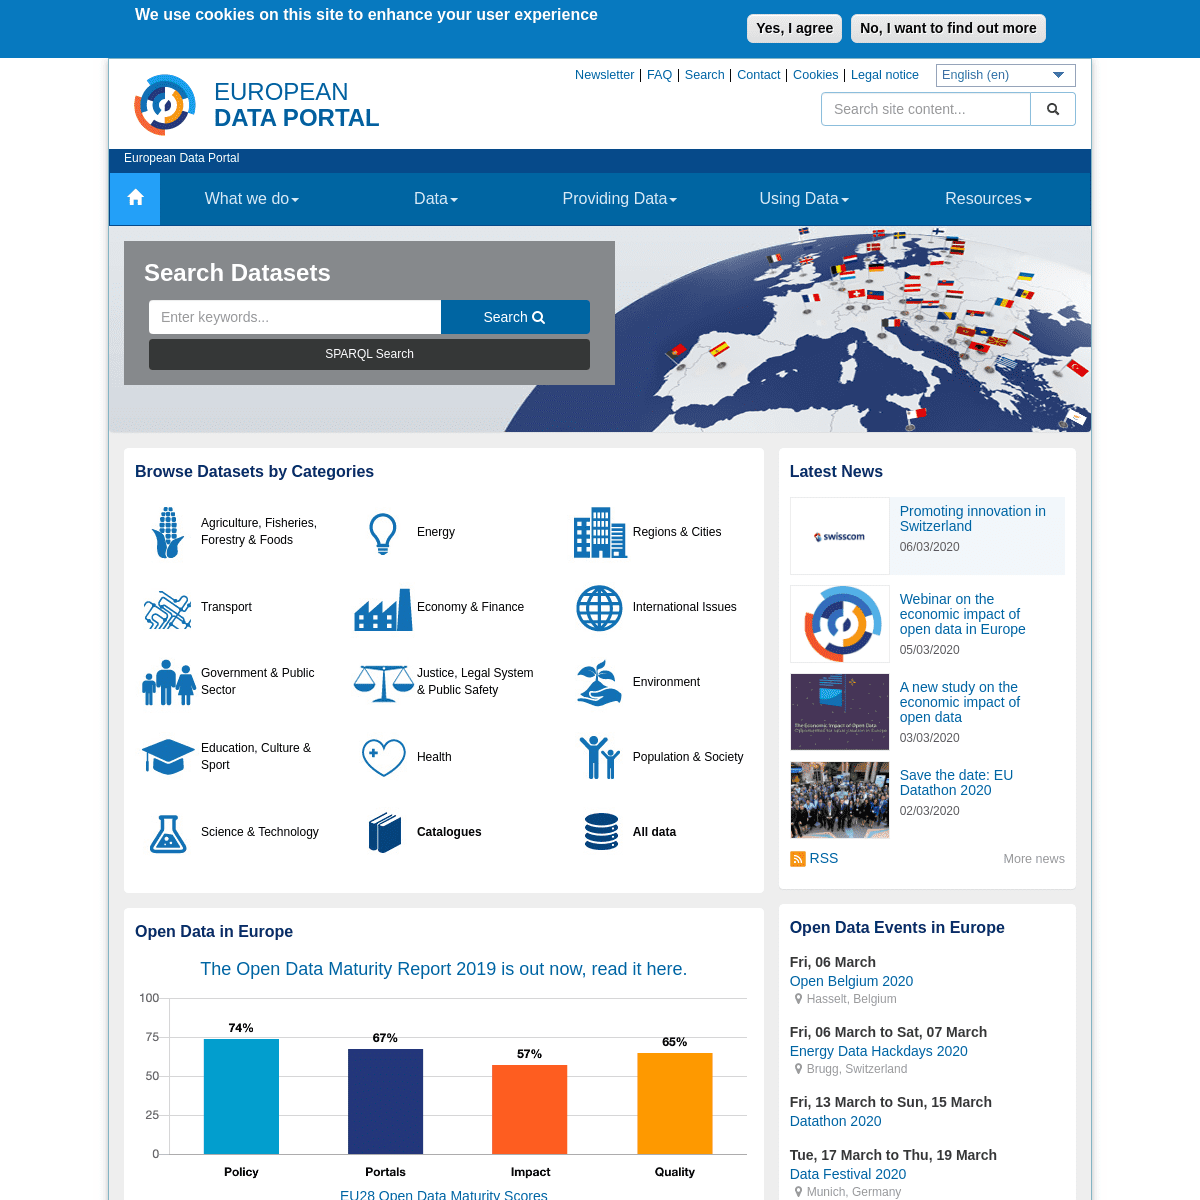 A complete backup of europeandataportal.eu